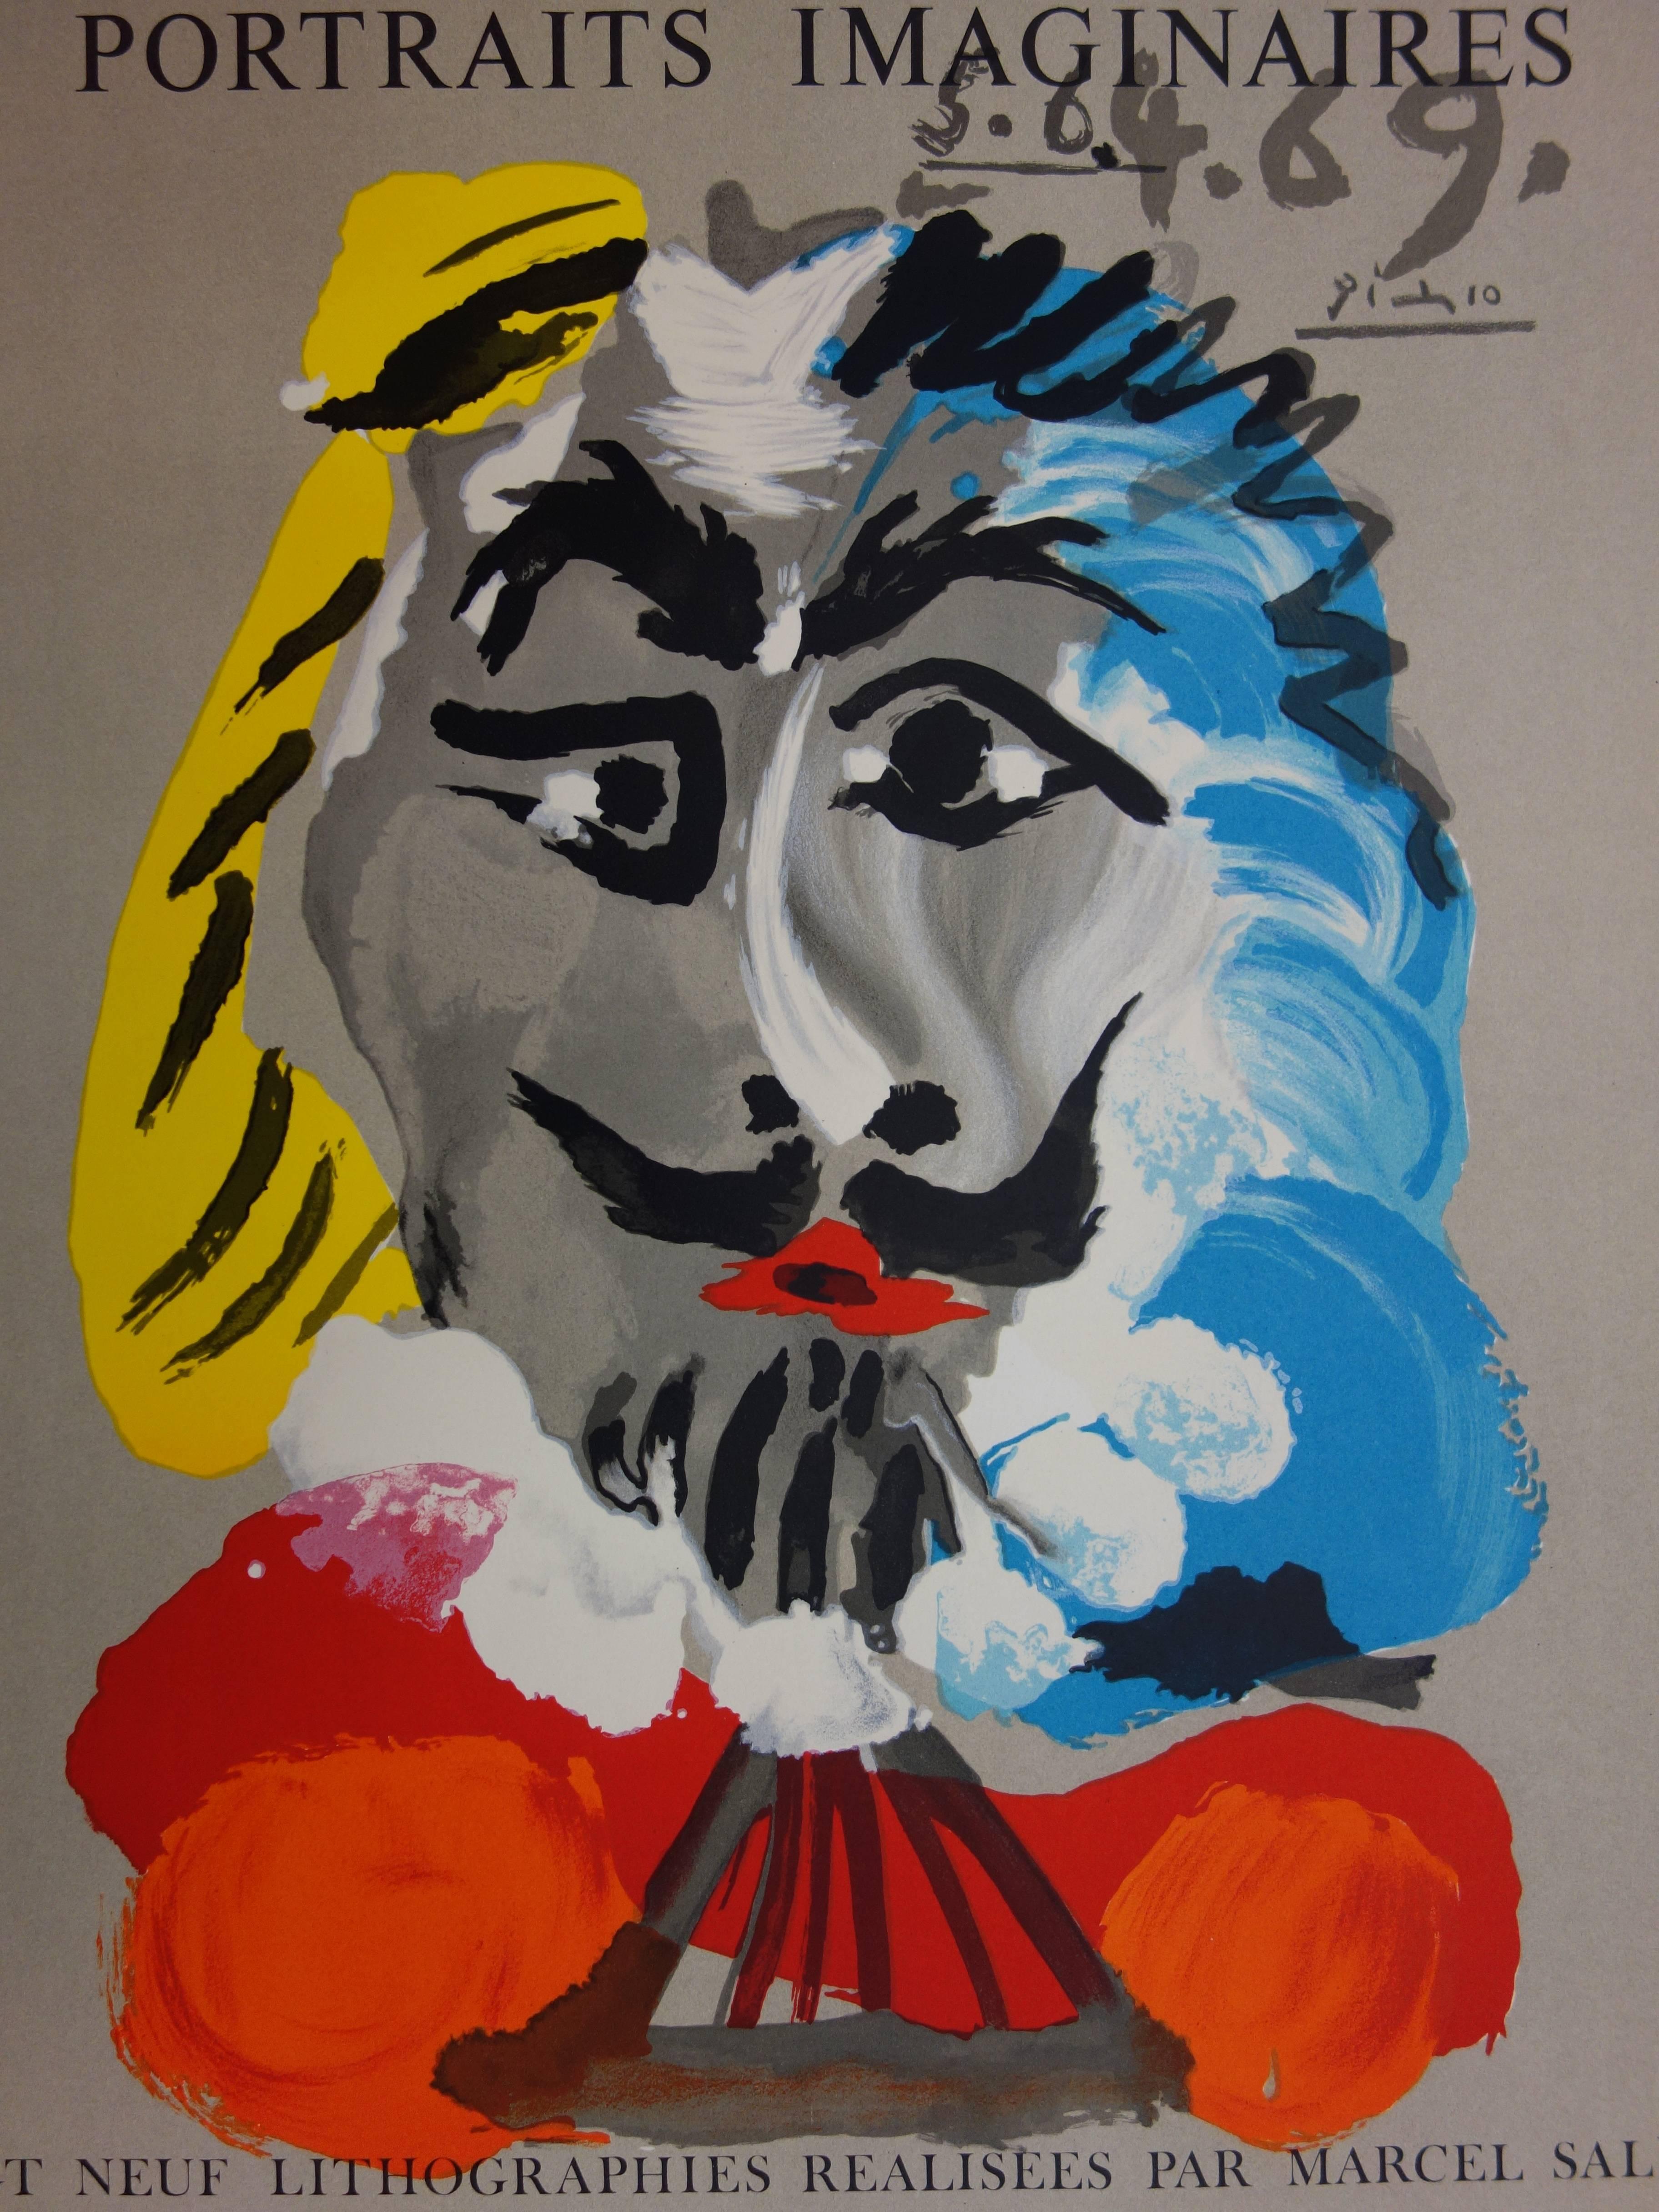 Portraits imaginaires : Le Musketeer - Lithographie - 1971 - Cubisme Print par (after) Pablo Picasso